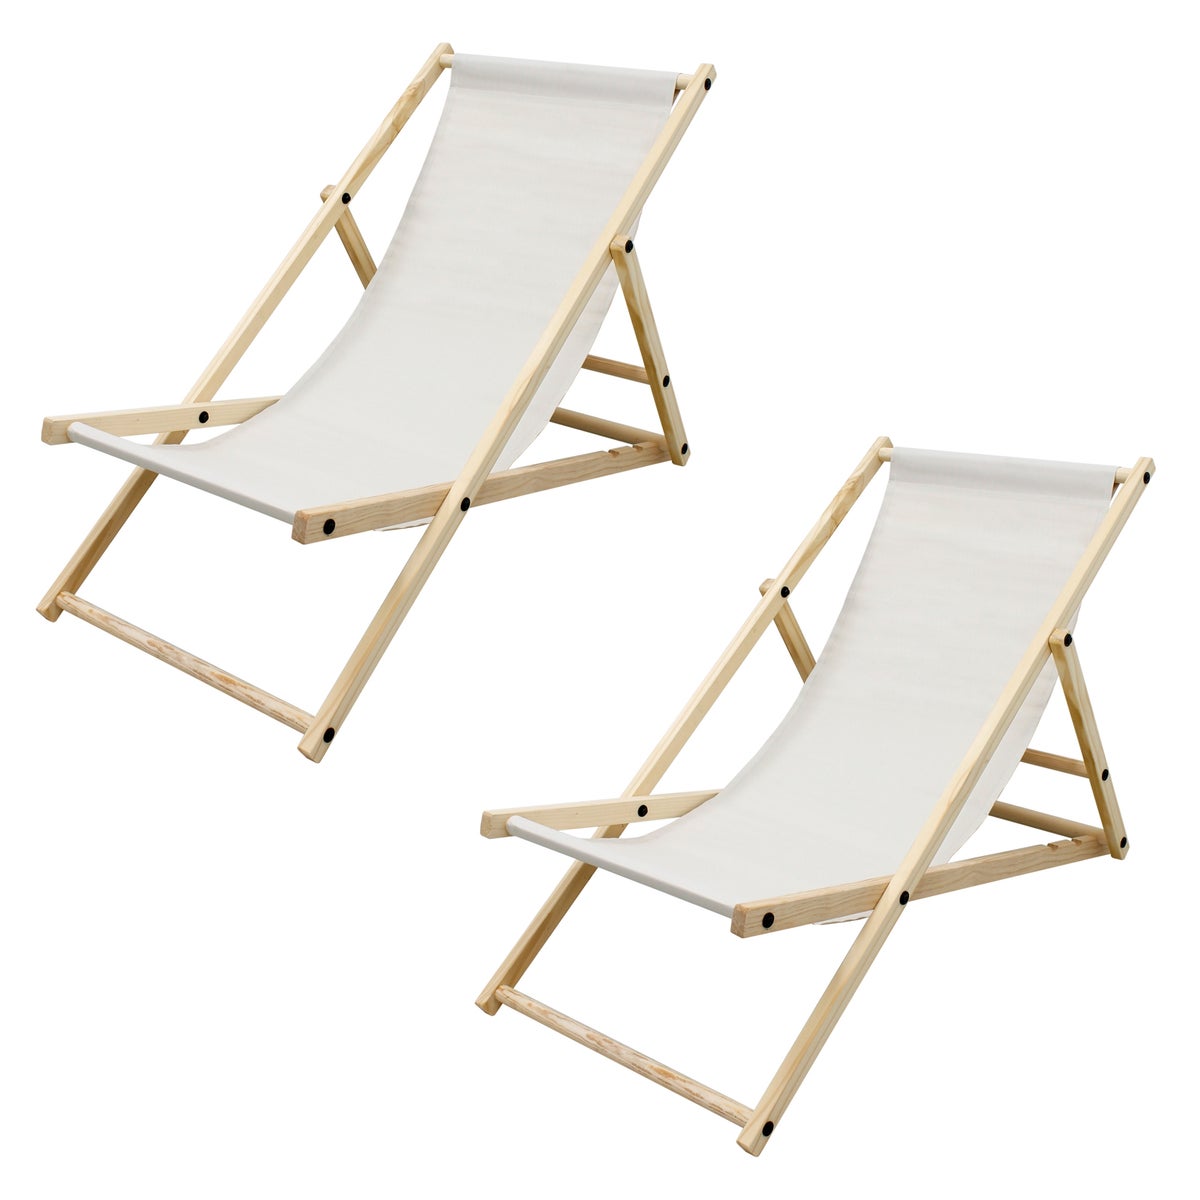 ECD Germany 2er Set Liegestuhl klappbar aus Holz, 3 Liegepositionen, Beige, bis 120kg, Gartenliege Sonnenliege Relaxliege Strandliege Liege Strandstuhl Klappstuhl, für den Garten, Terrasse und Balkon